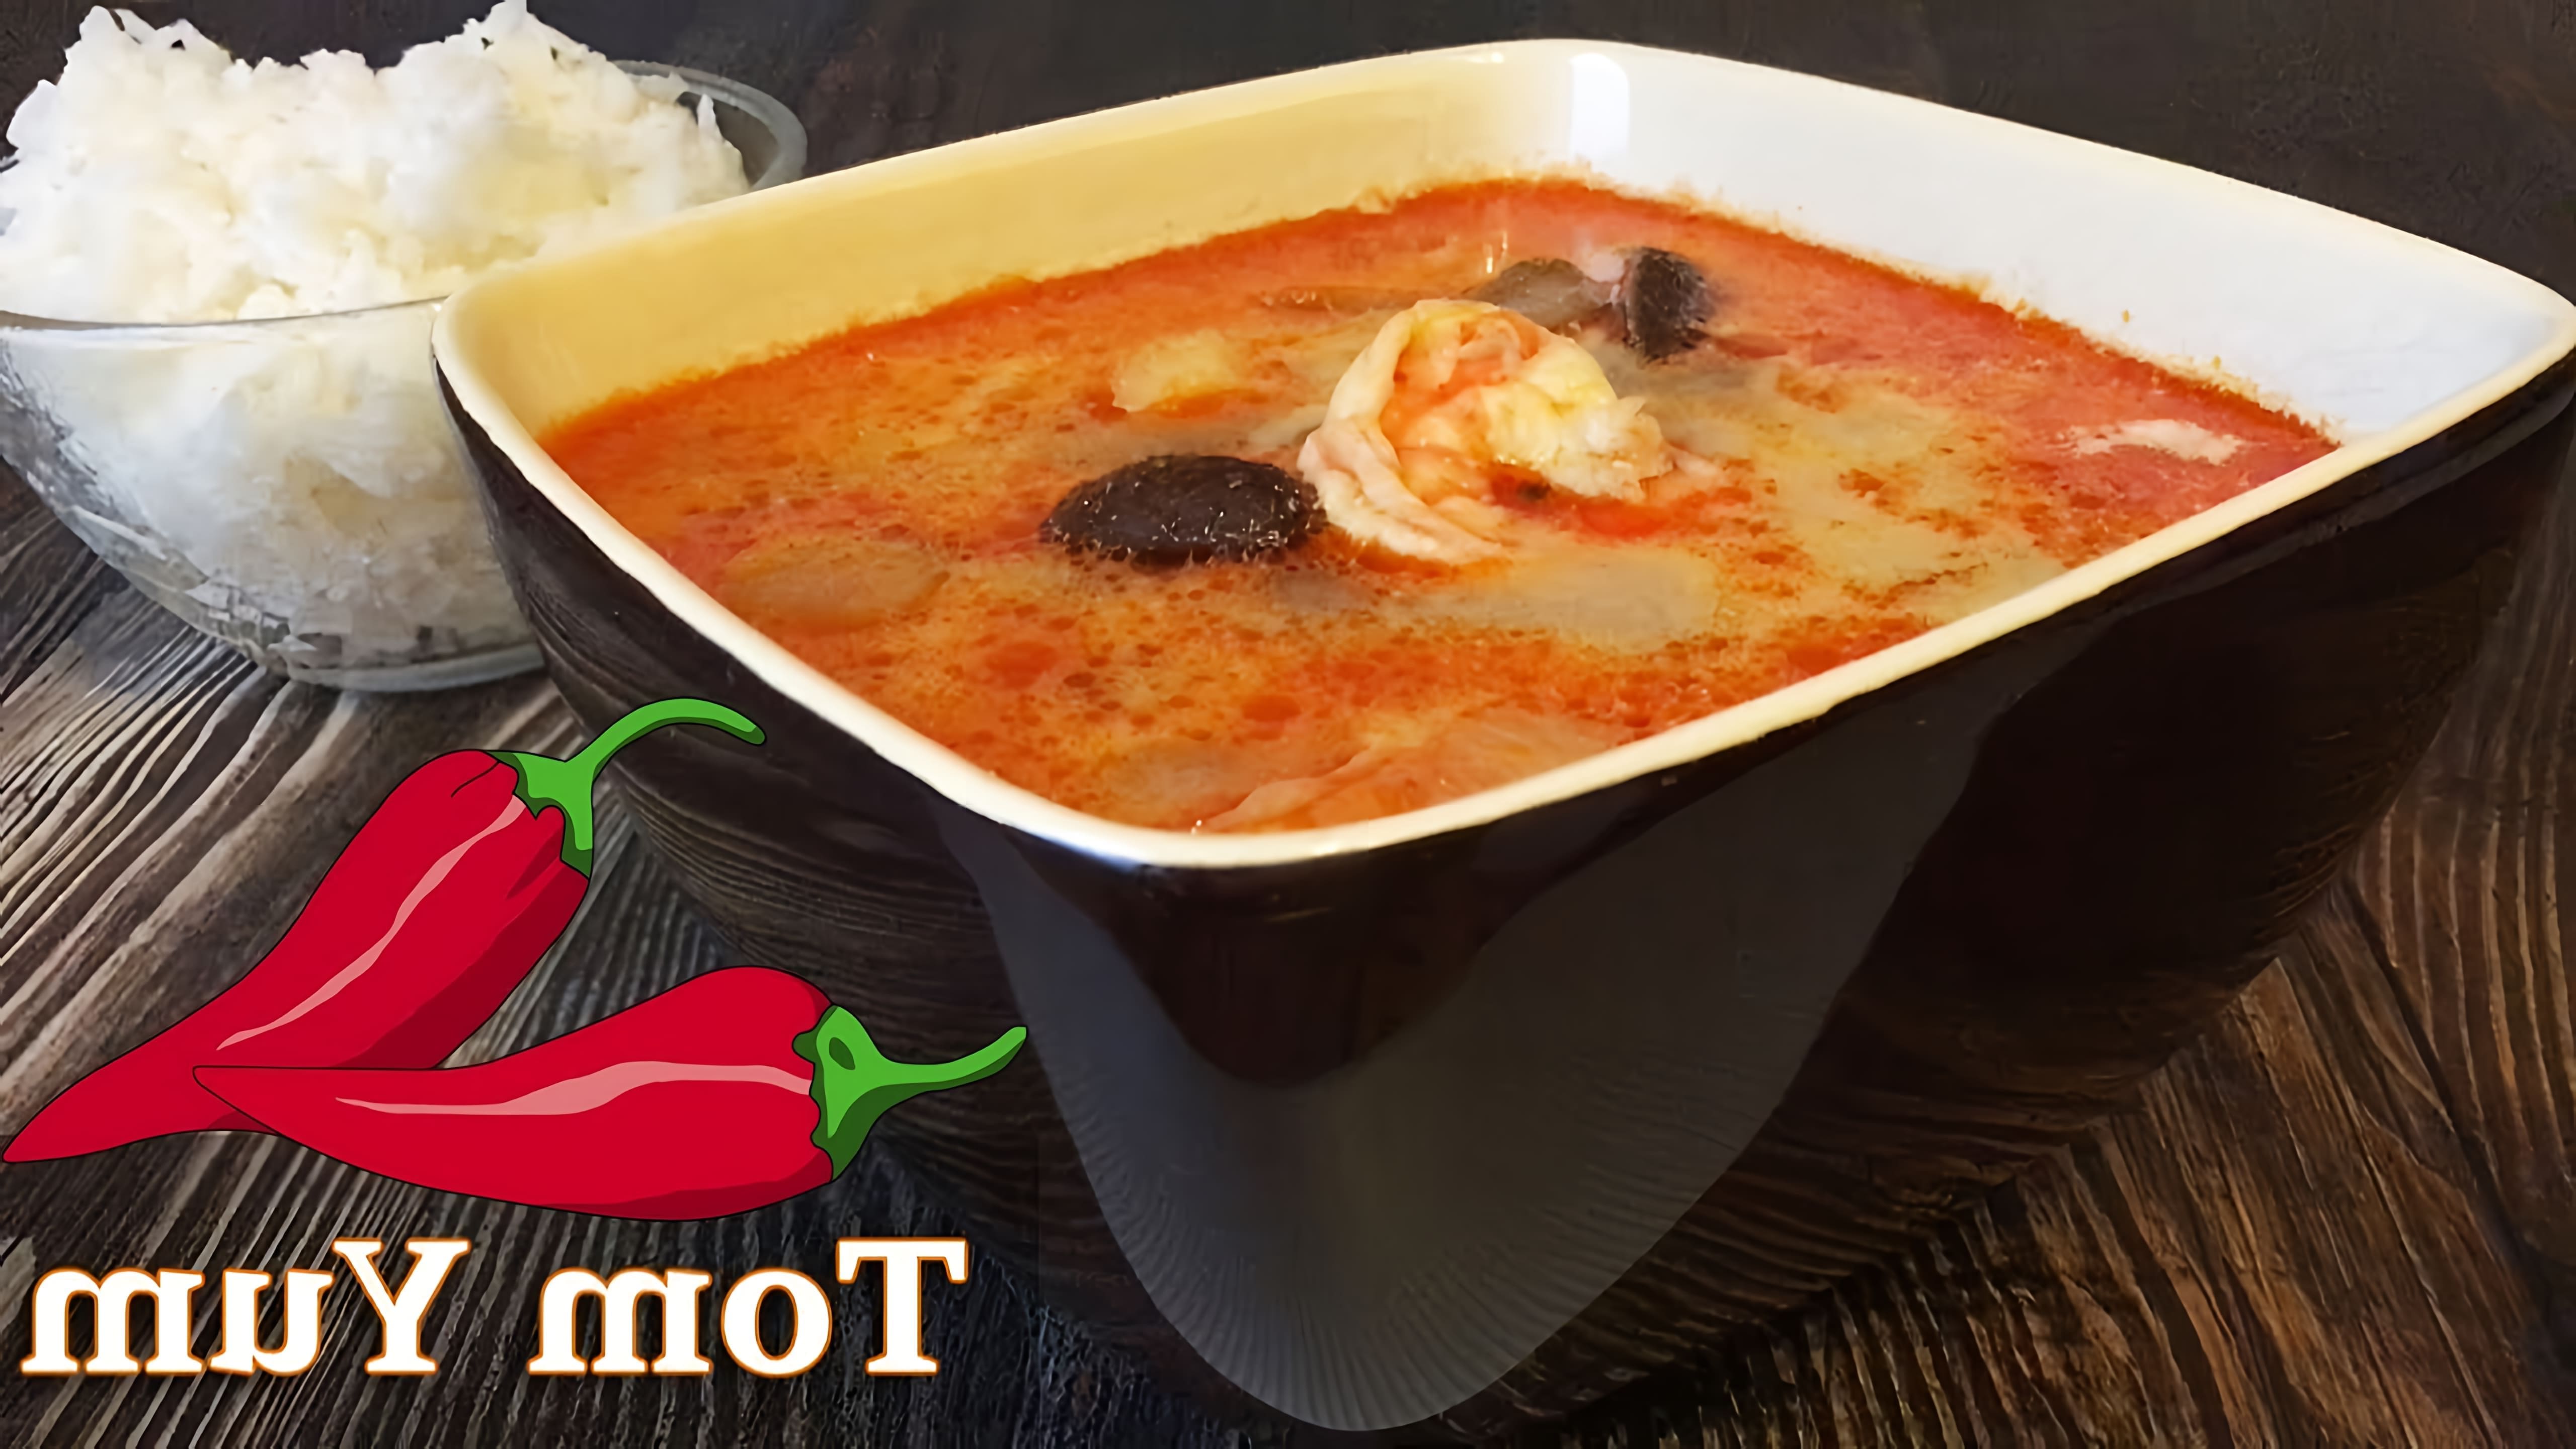 Суп Том Ям - это одно из самых известных блюд тайской кухни, которое славится своим ярким и насыщенным вкусом